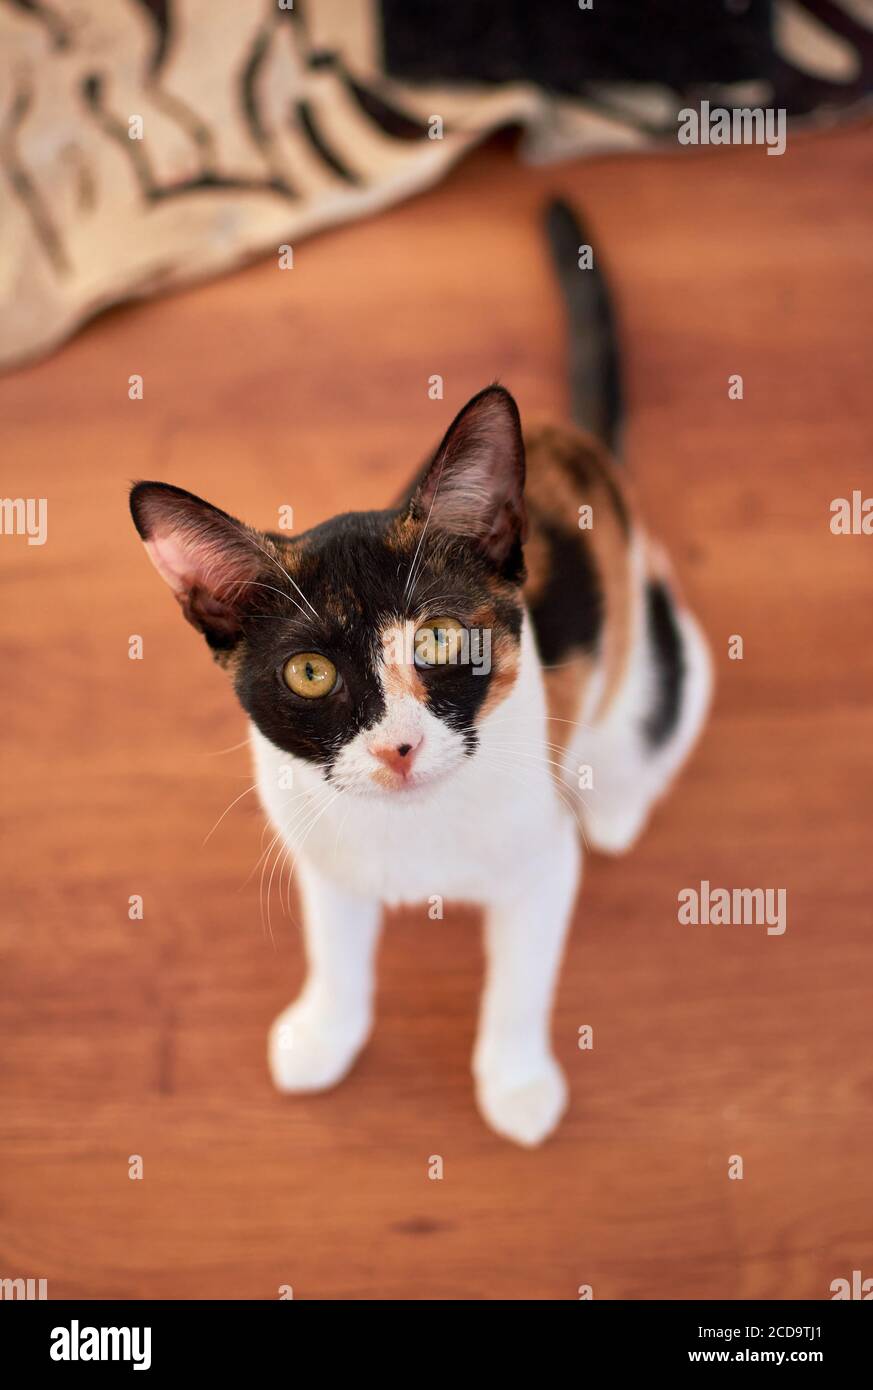 Immagine verticale ad angolo elevato di un bianco e nero con i punti dorati del gatto sono seduti sul pavimento Foto Stock